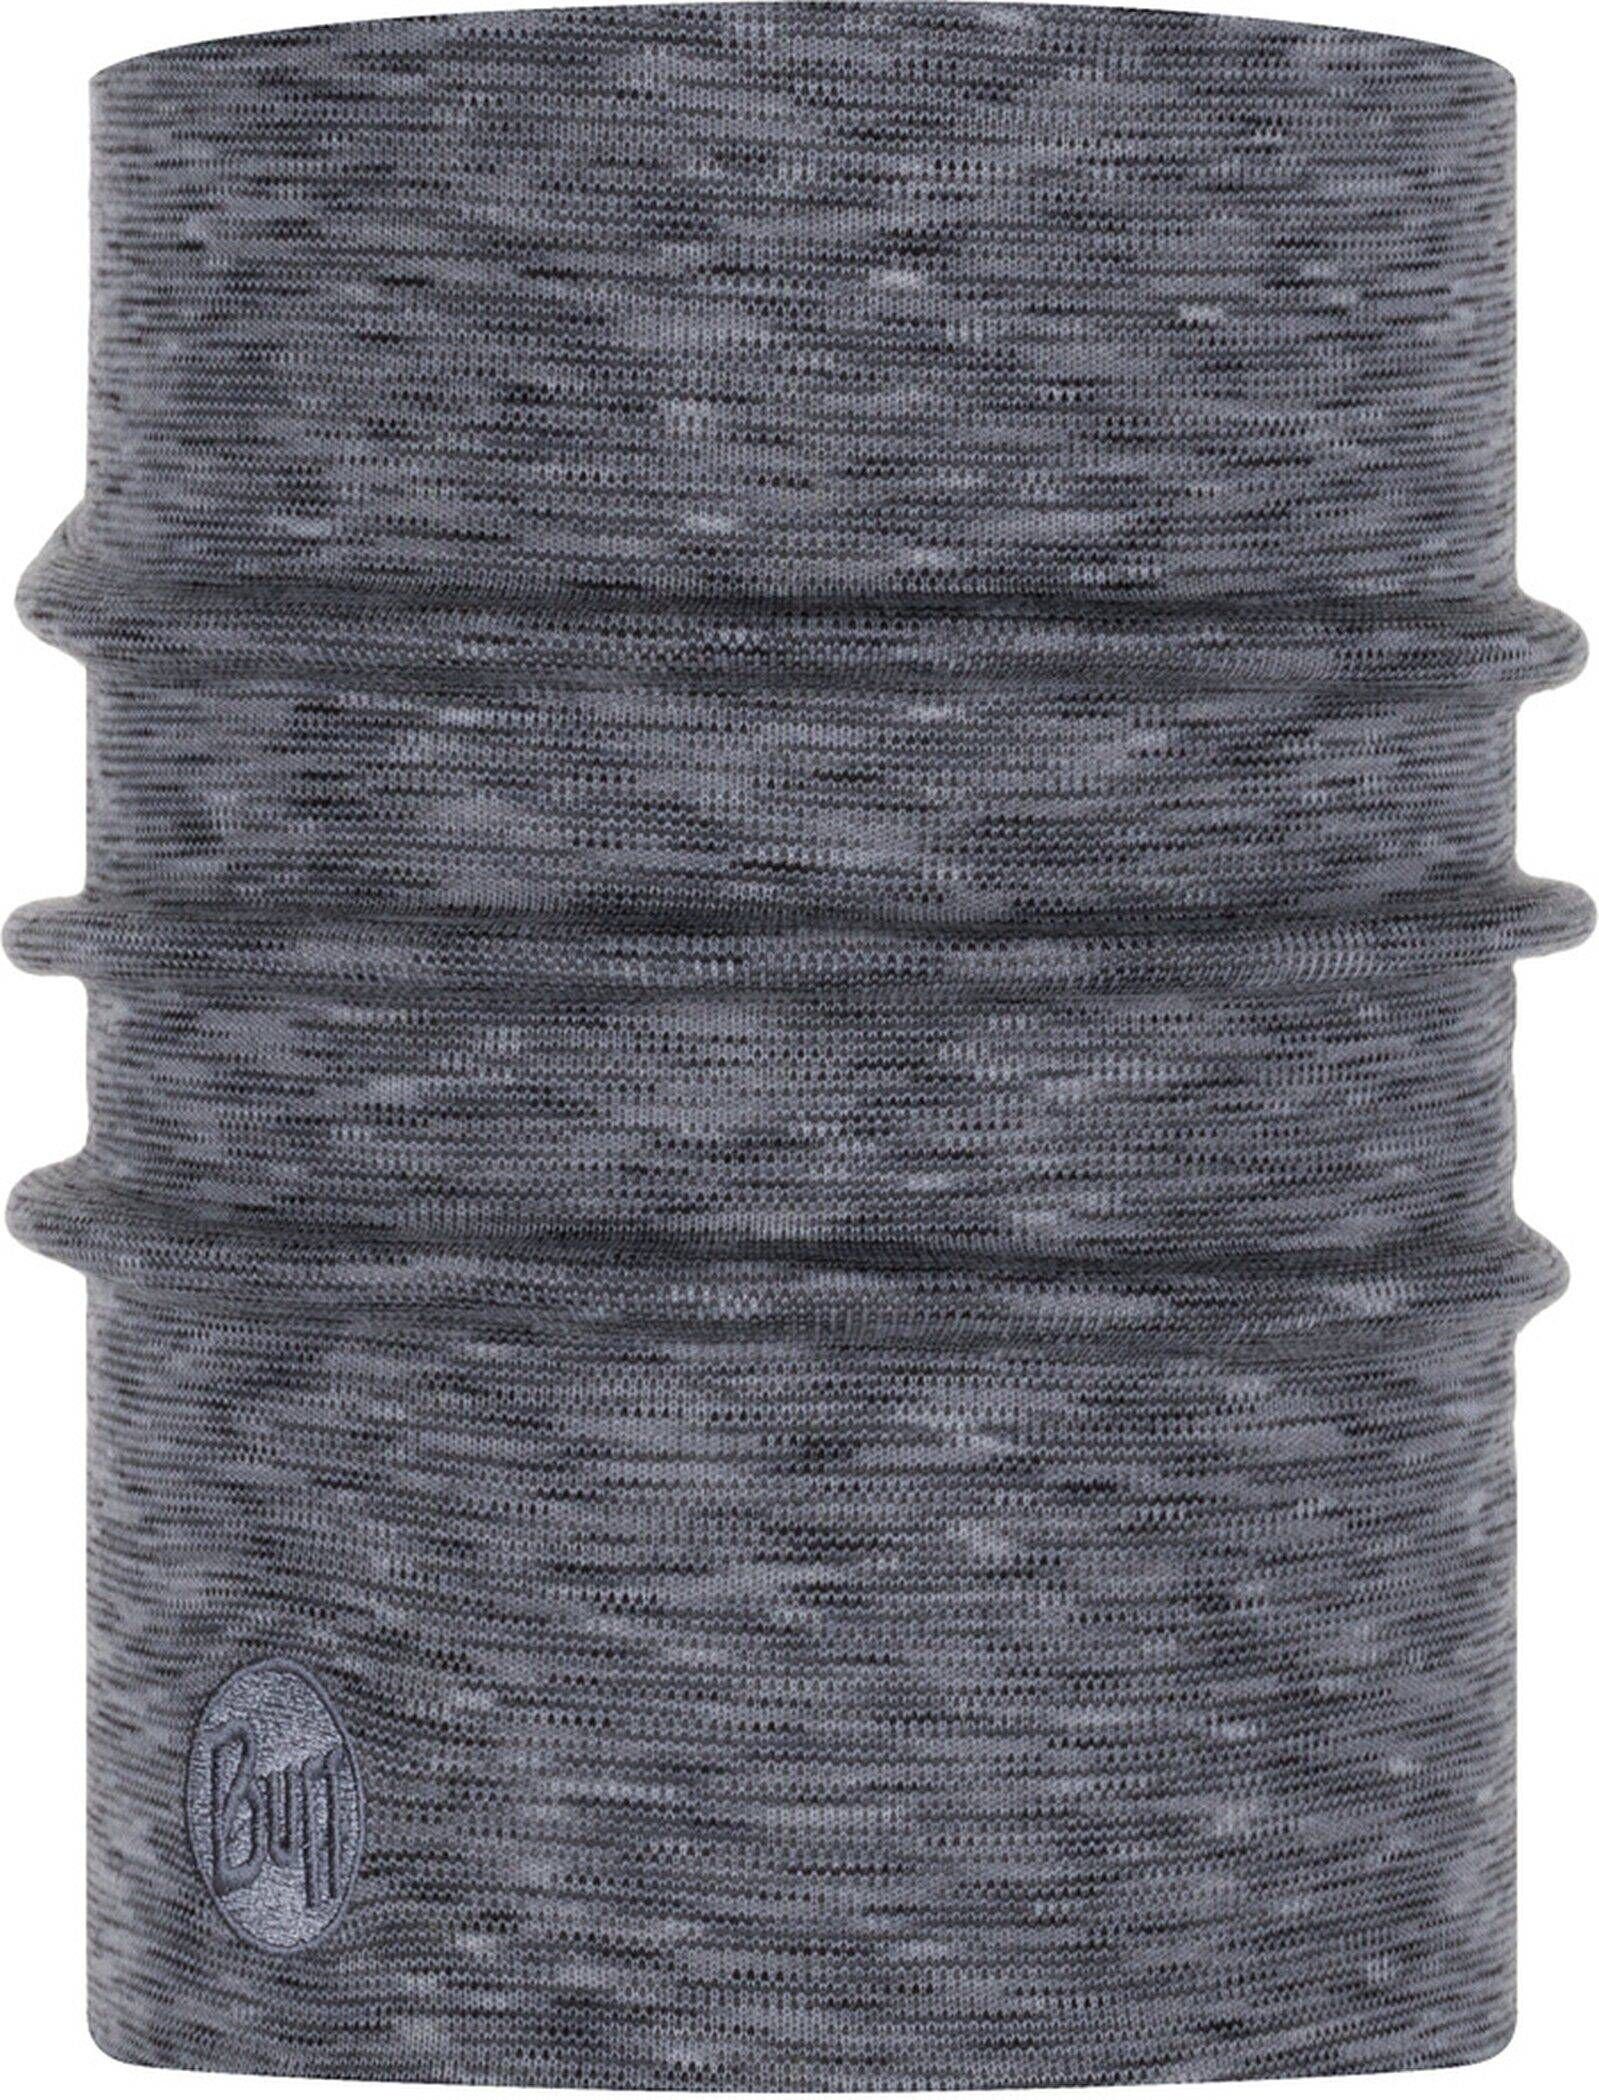 Buff Halswärmer grey Grau-fog multi Loop stripes